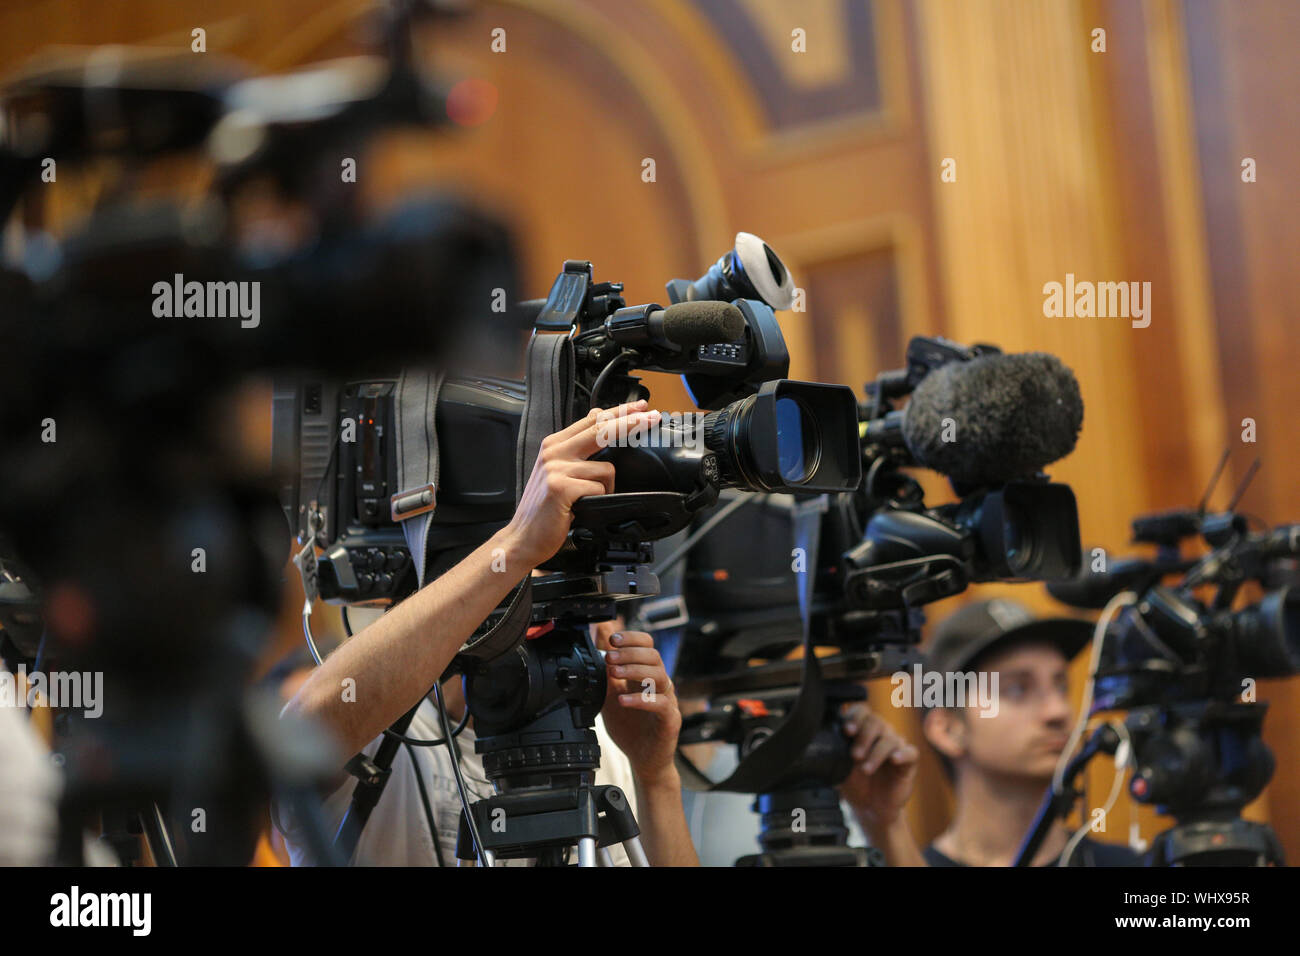 Dettagli della televisione con telecamere e apparecchiature di registrazione durante un evento stampa Foto Stock